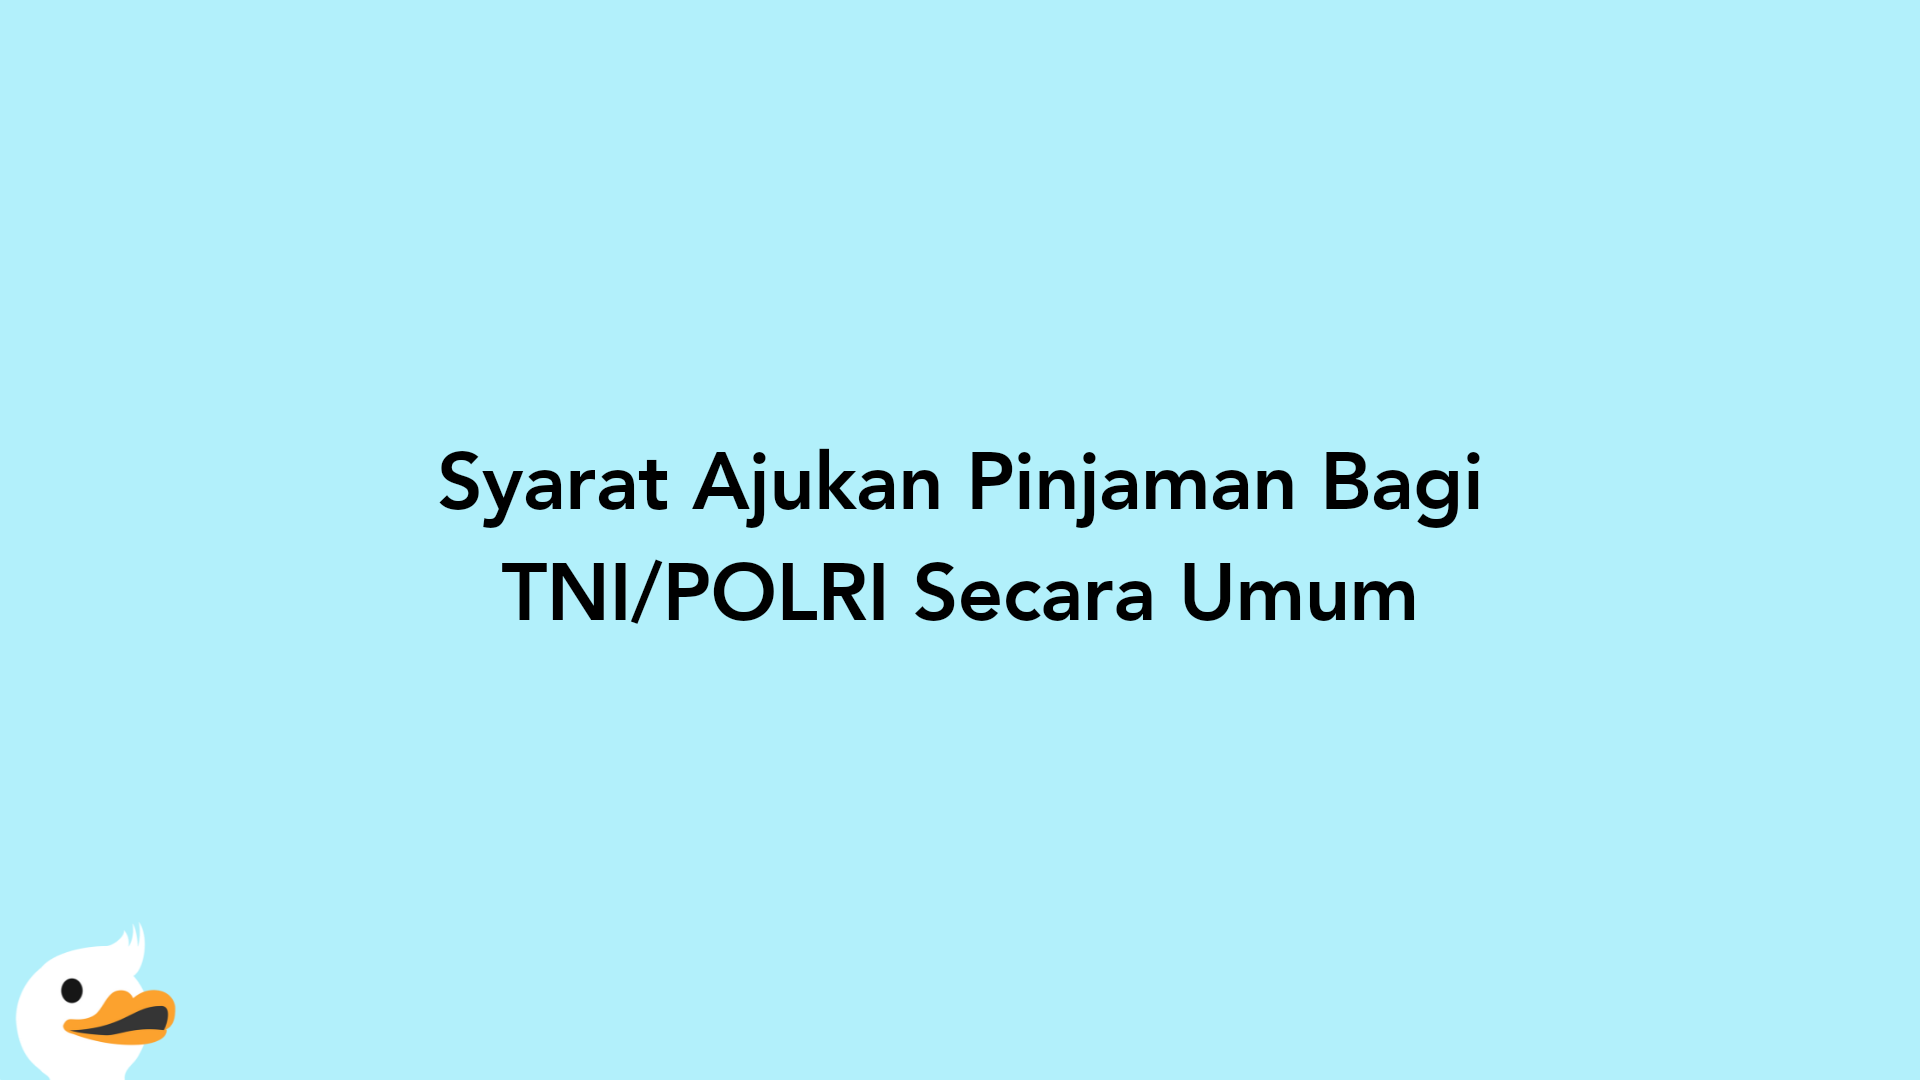 Syarat Ajukan Pinjaman Bagi TNI/POLRI Secara Umum